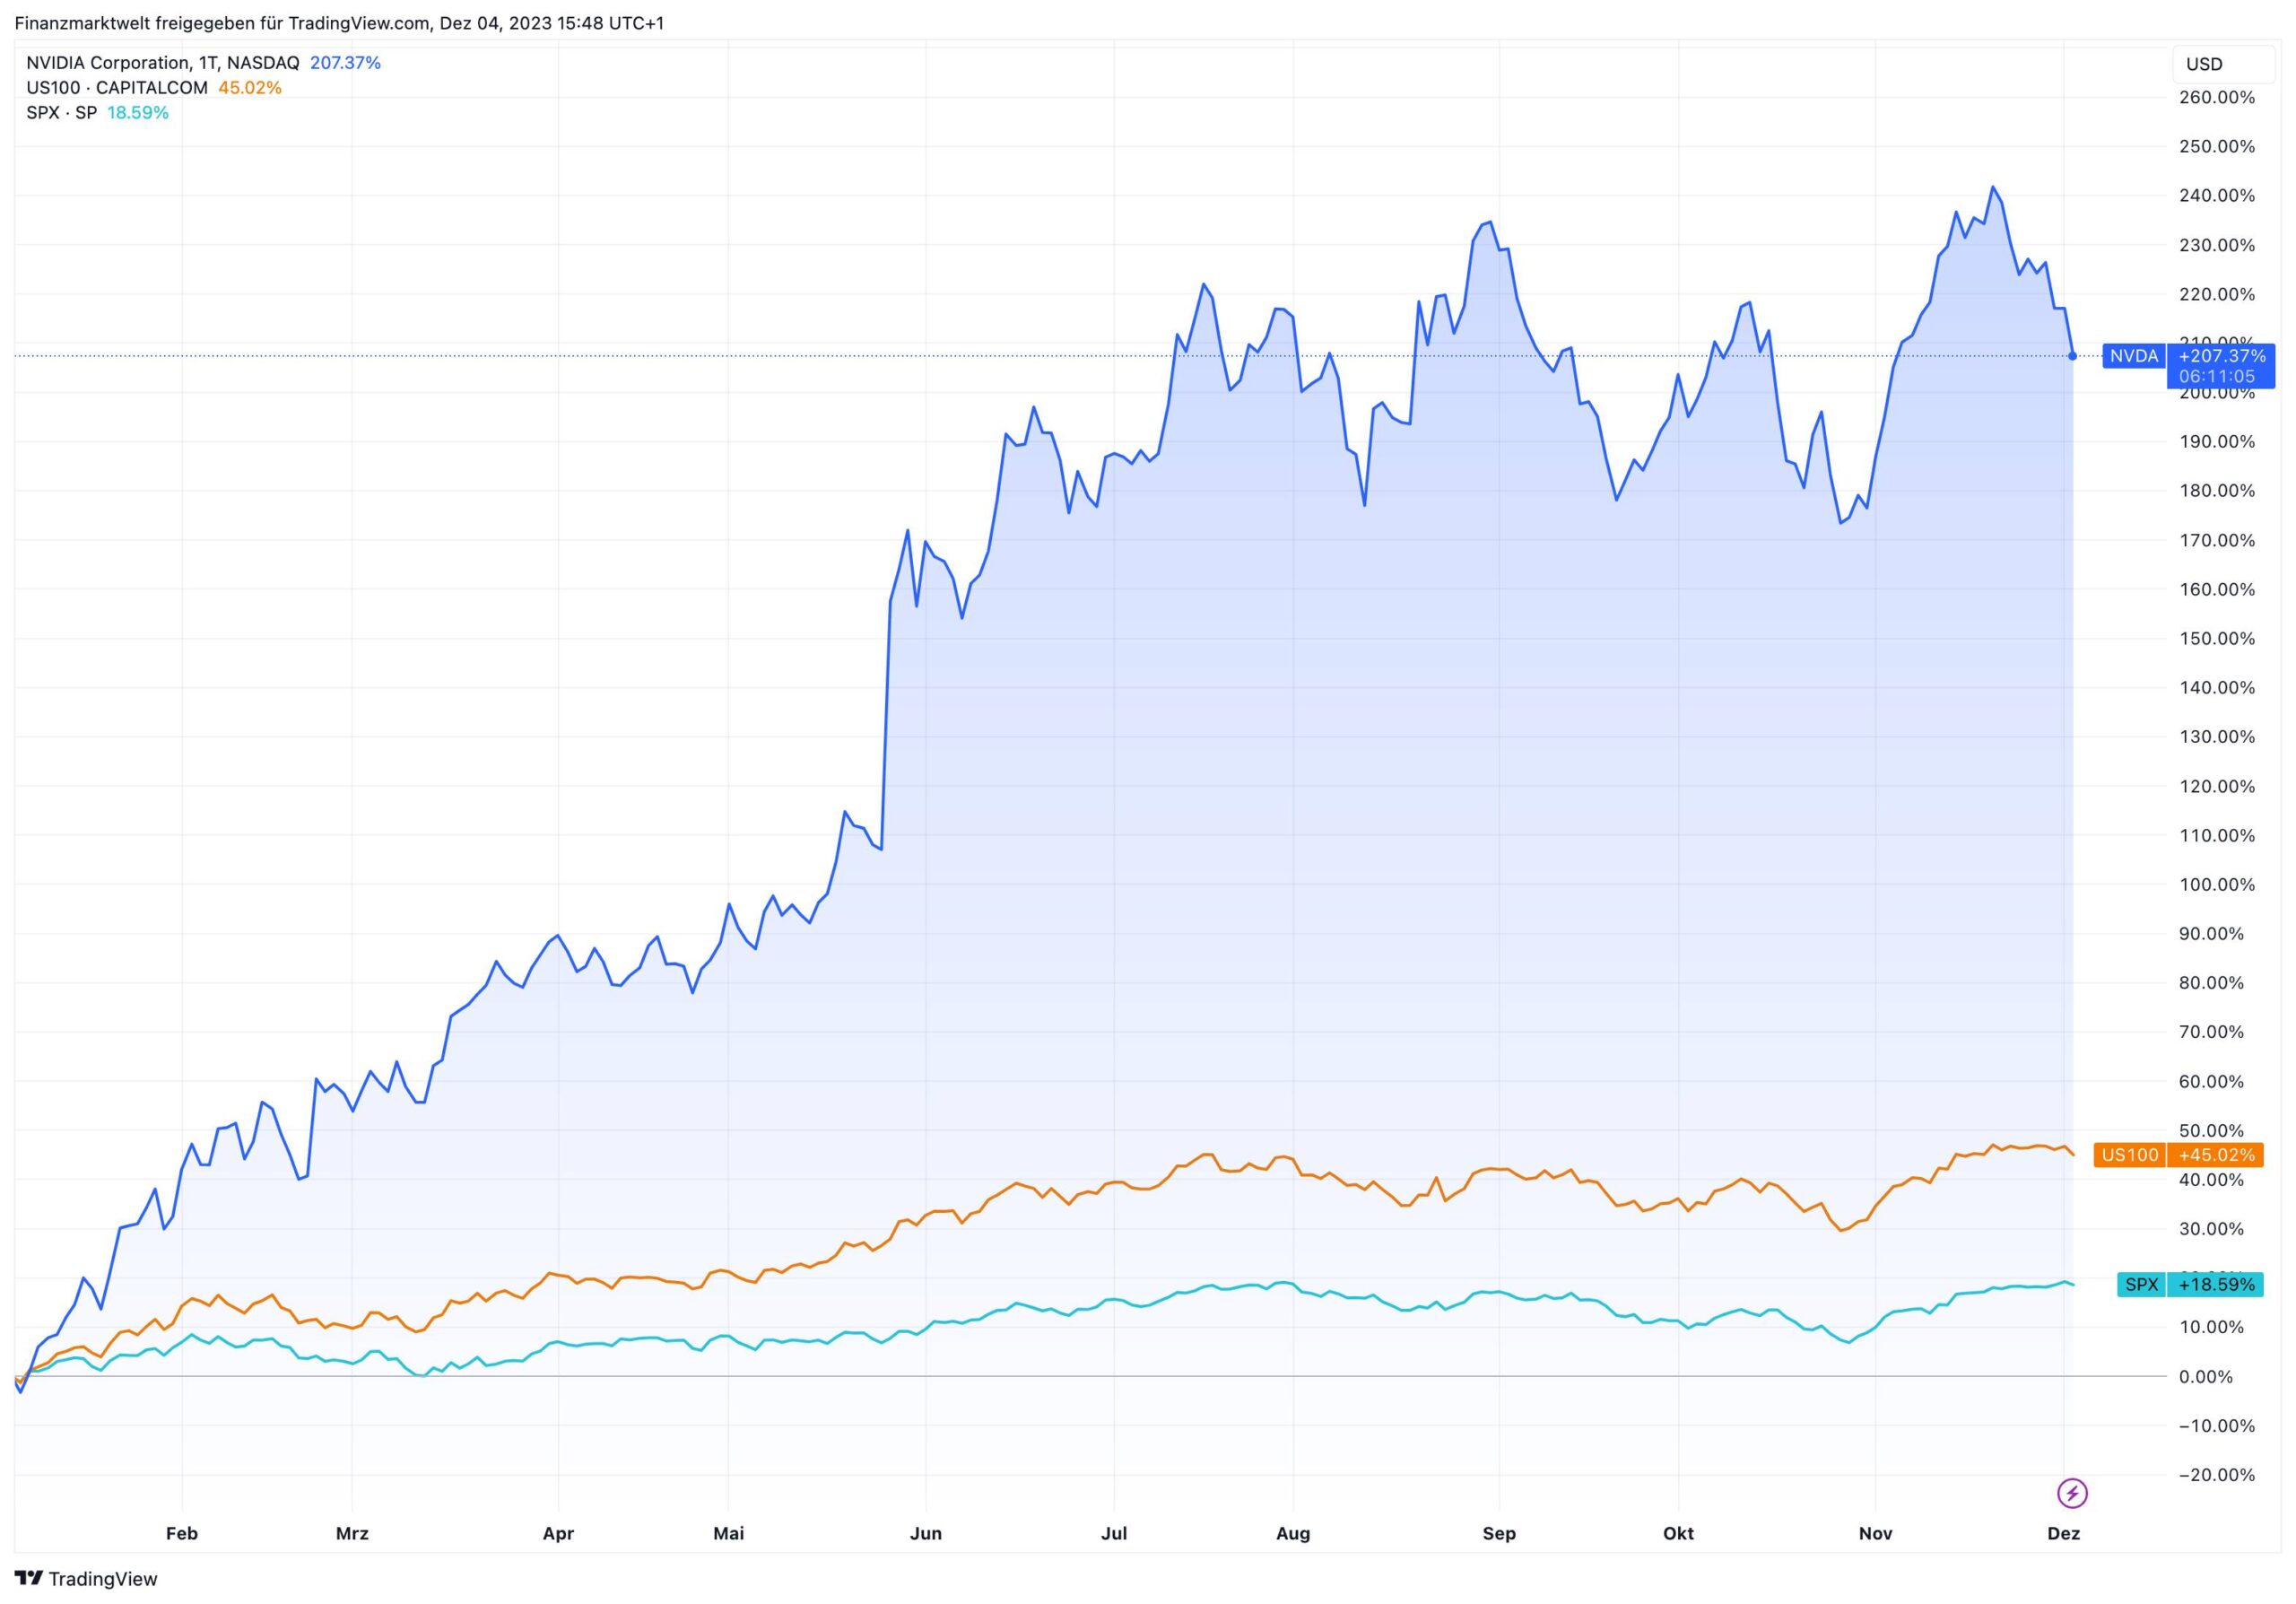 Prozentuale Entwicklung der Nvidia-Aktie im Vergleich zu Nasdaq und S&P 500